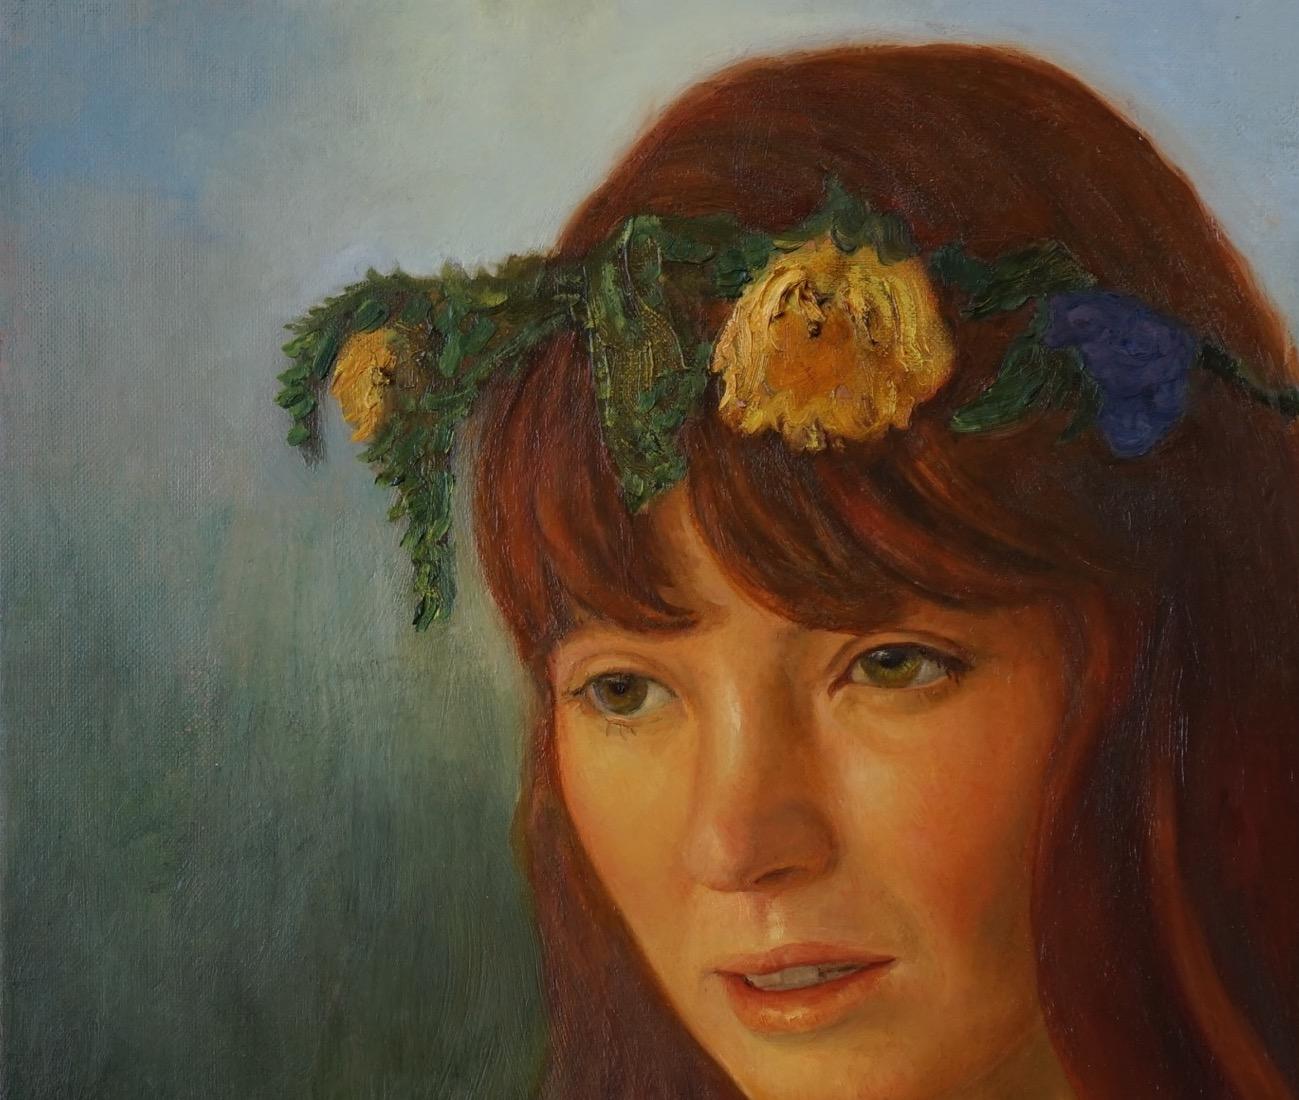 FLOWER CROWN - woman wearing flower wreath - oil on linen - Painting by David Molesky